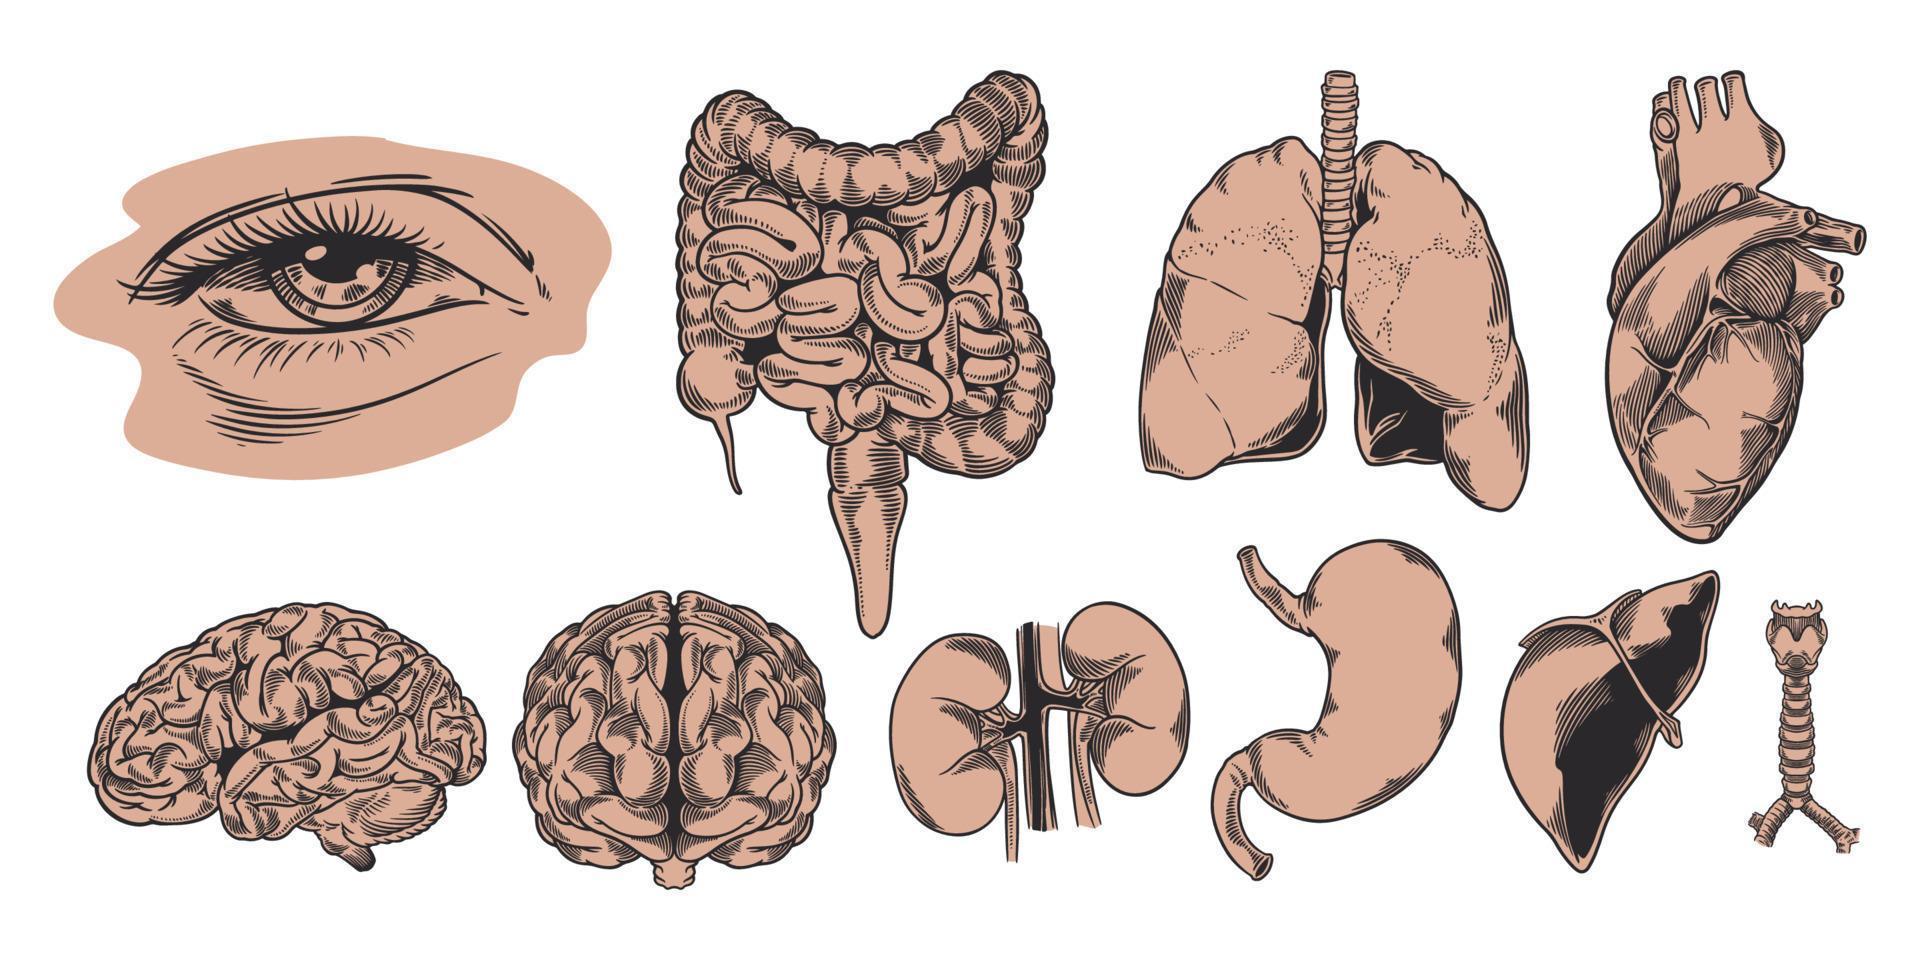 conjunto dibujado a mano de la anatomía humana. estudia y estructura los órganos internos. vector